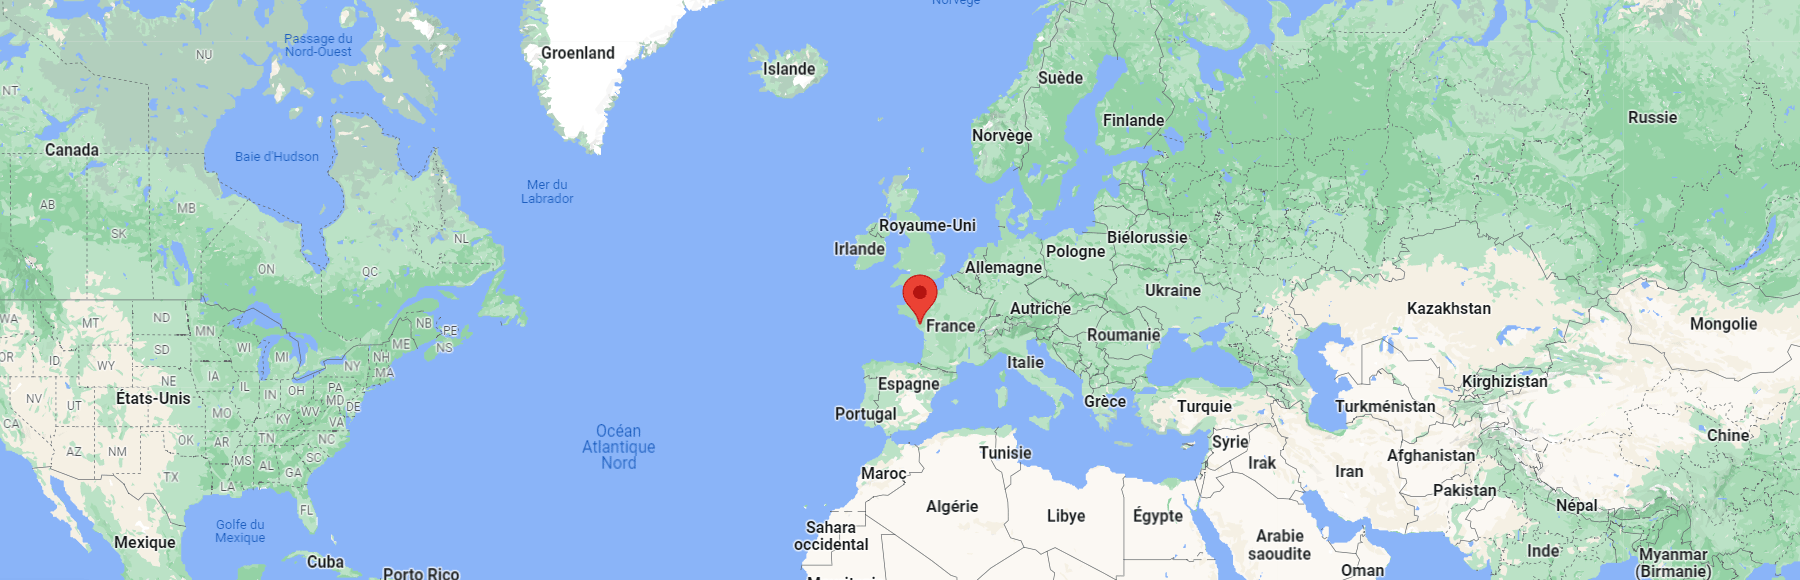 Click Busters localisé à Nantes en Bretagne / France sur Google Map